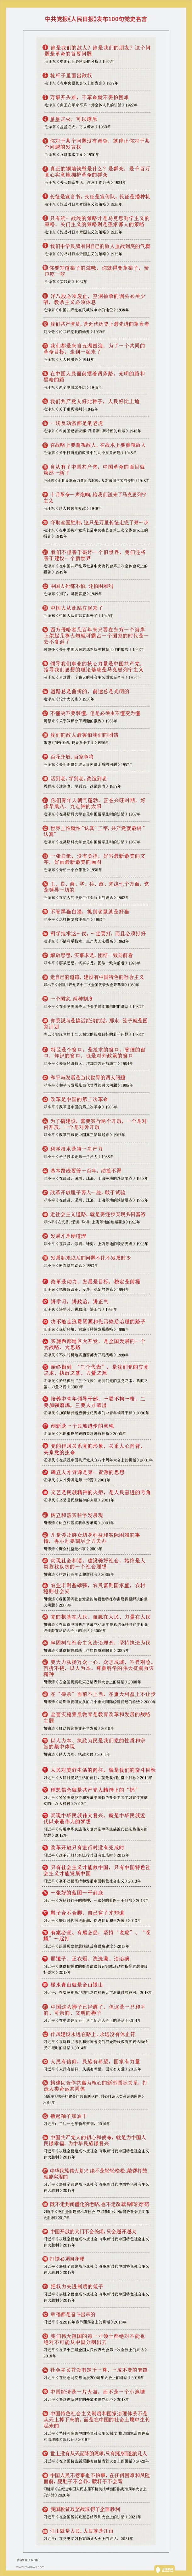 中共发布百句党史名言毛泽东与习近平平分秋色 万维读者网